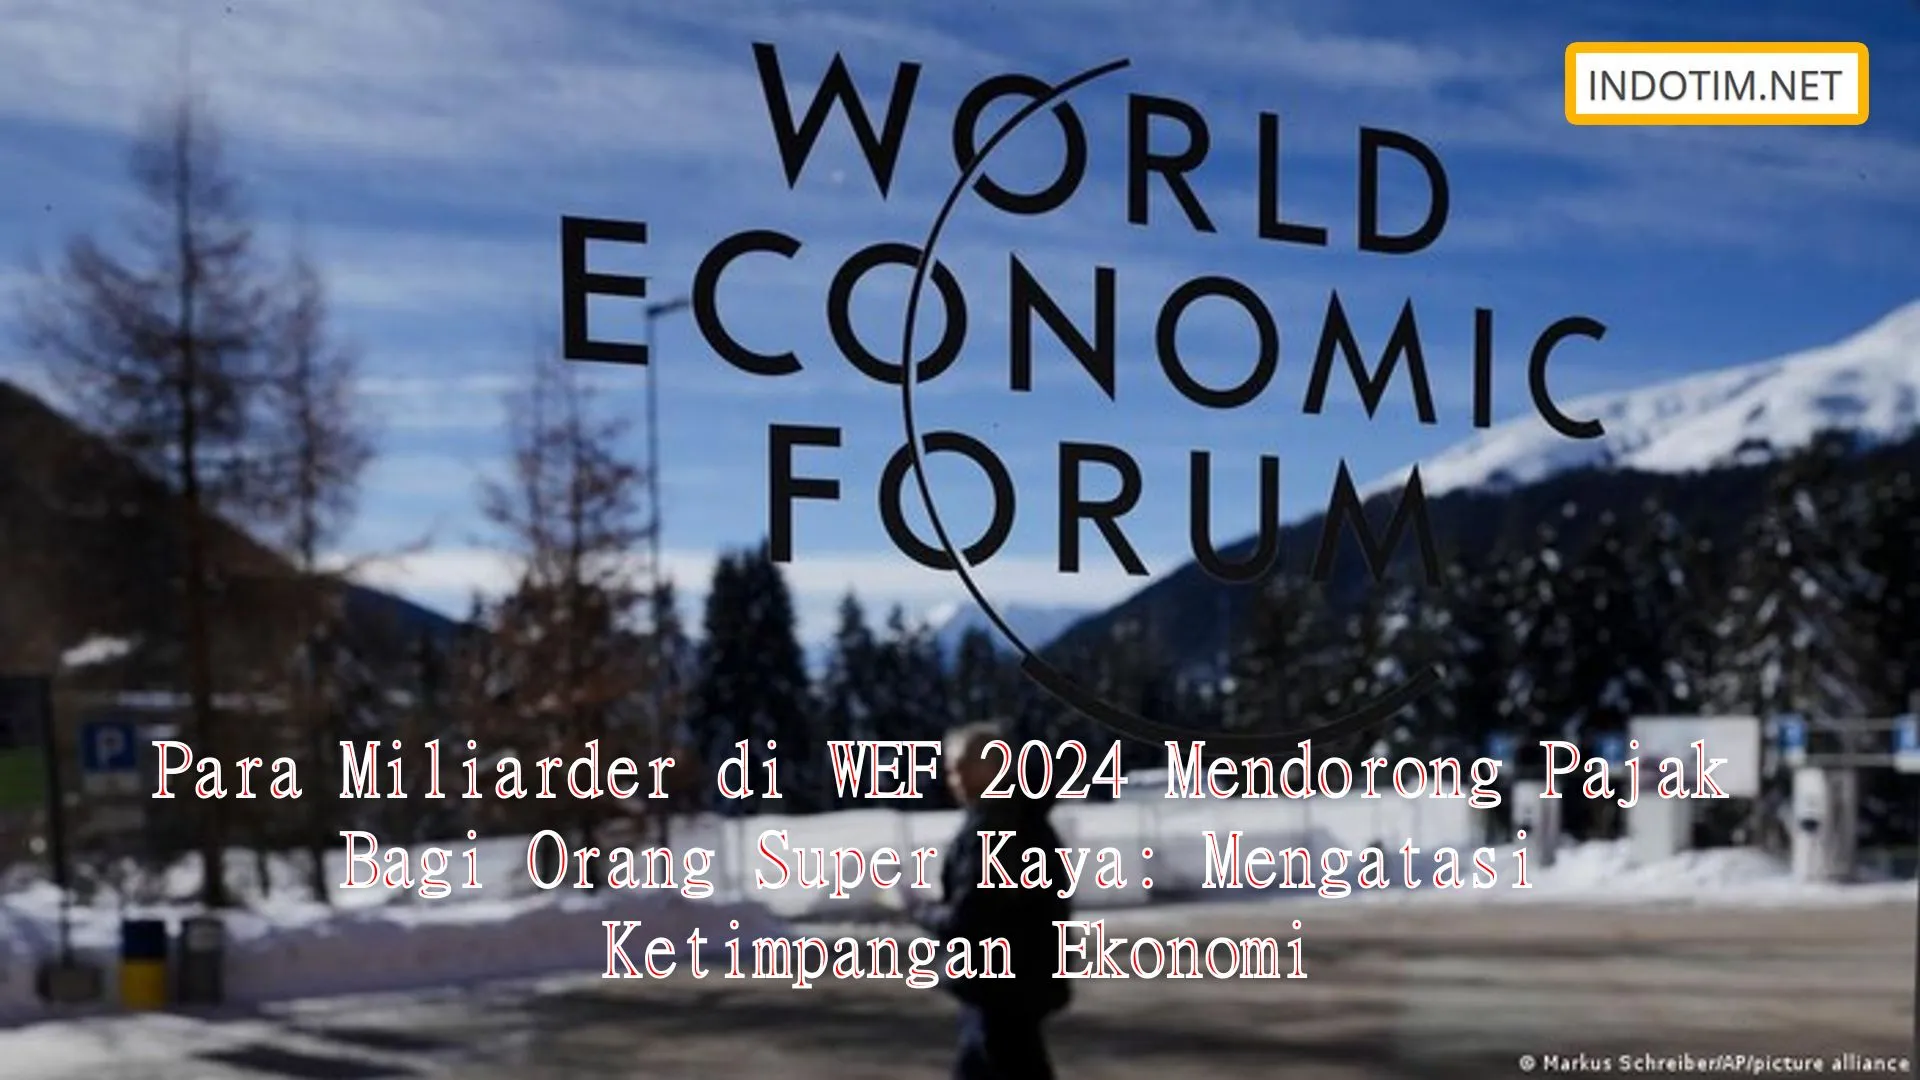 Para Miliarder di WEF 2024 Mendorong Pajak Bagi Orang Super Kaya: Mengatasi Ketimpangan Ekonomi